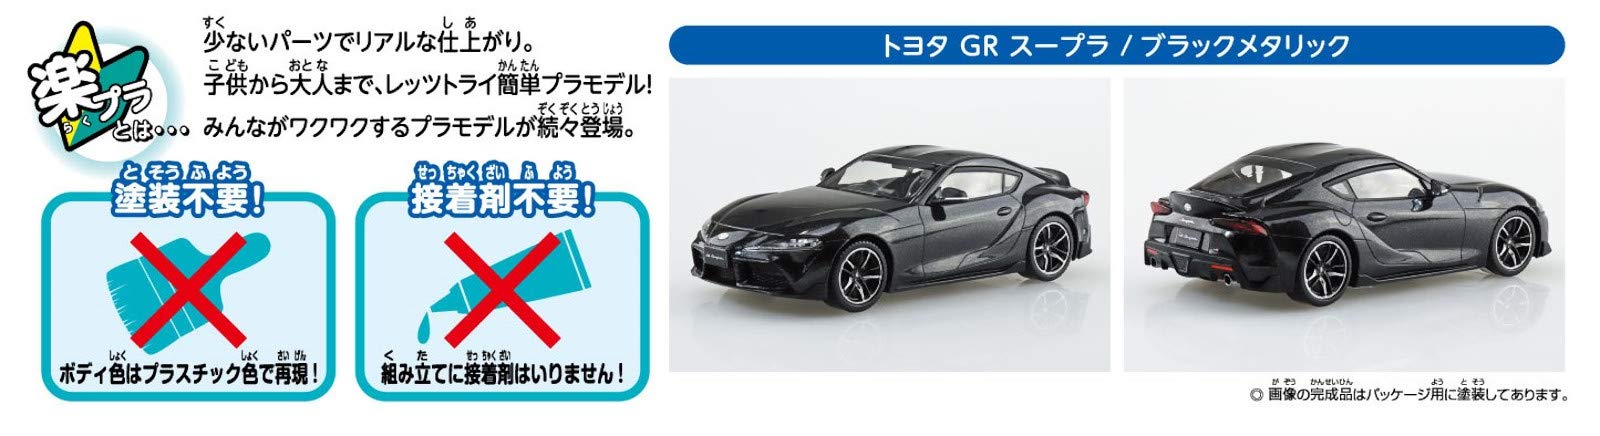 AOSHIMA The Snap Kit 1/32 Toyota Gr Supra Black Metallic Plastic Model